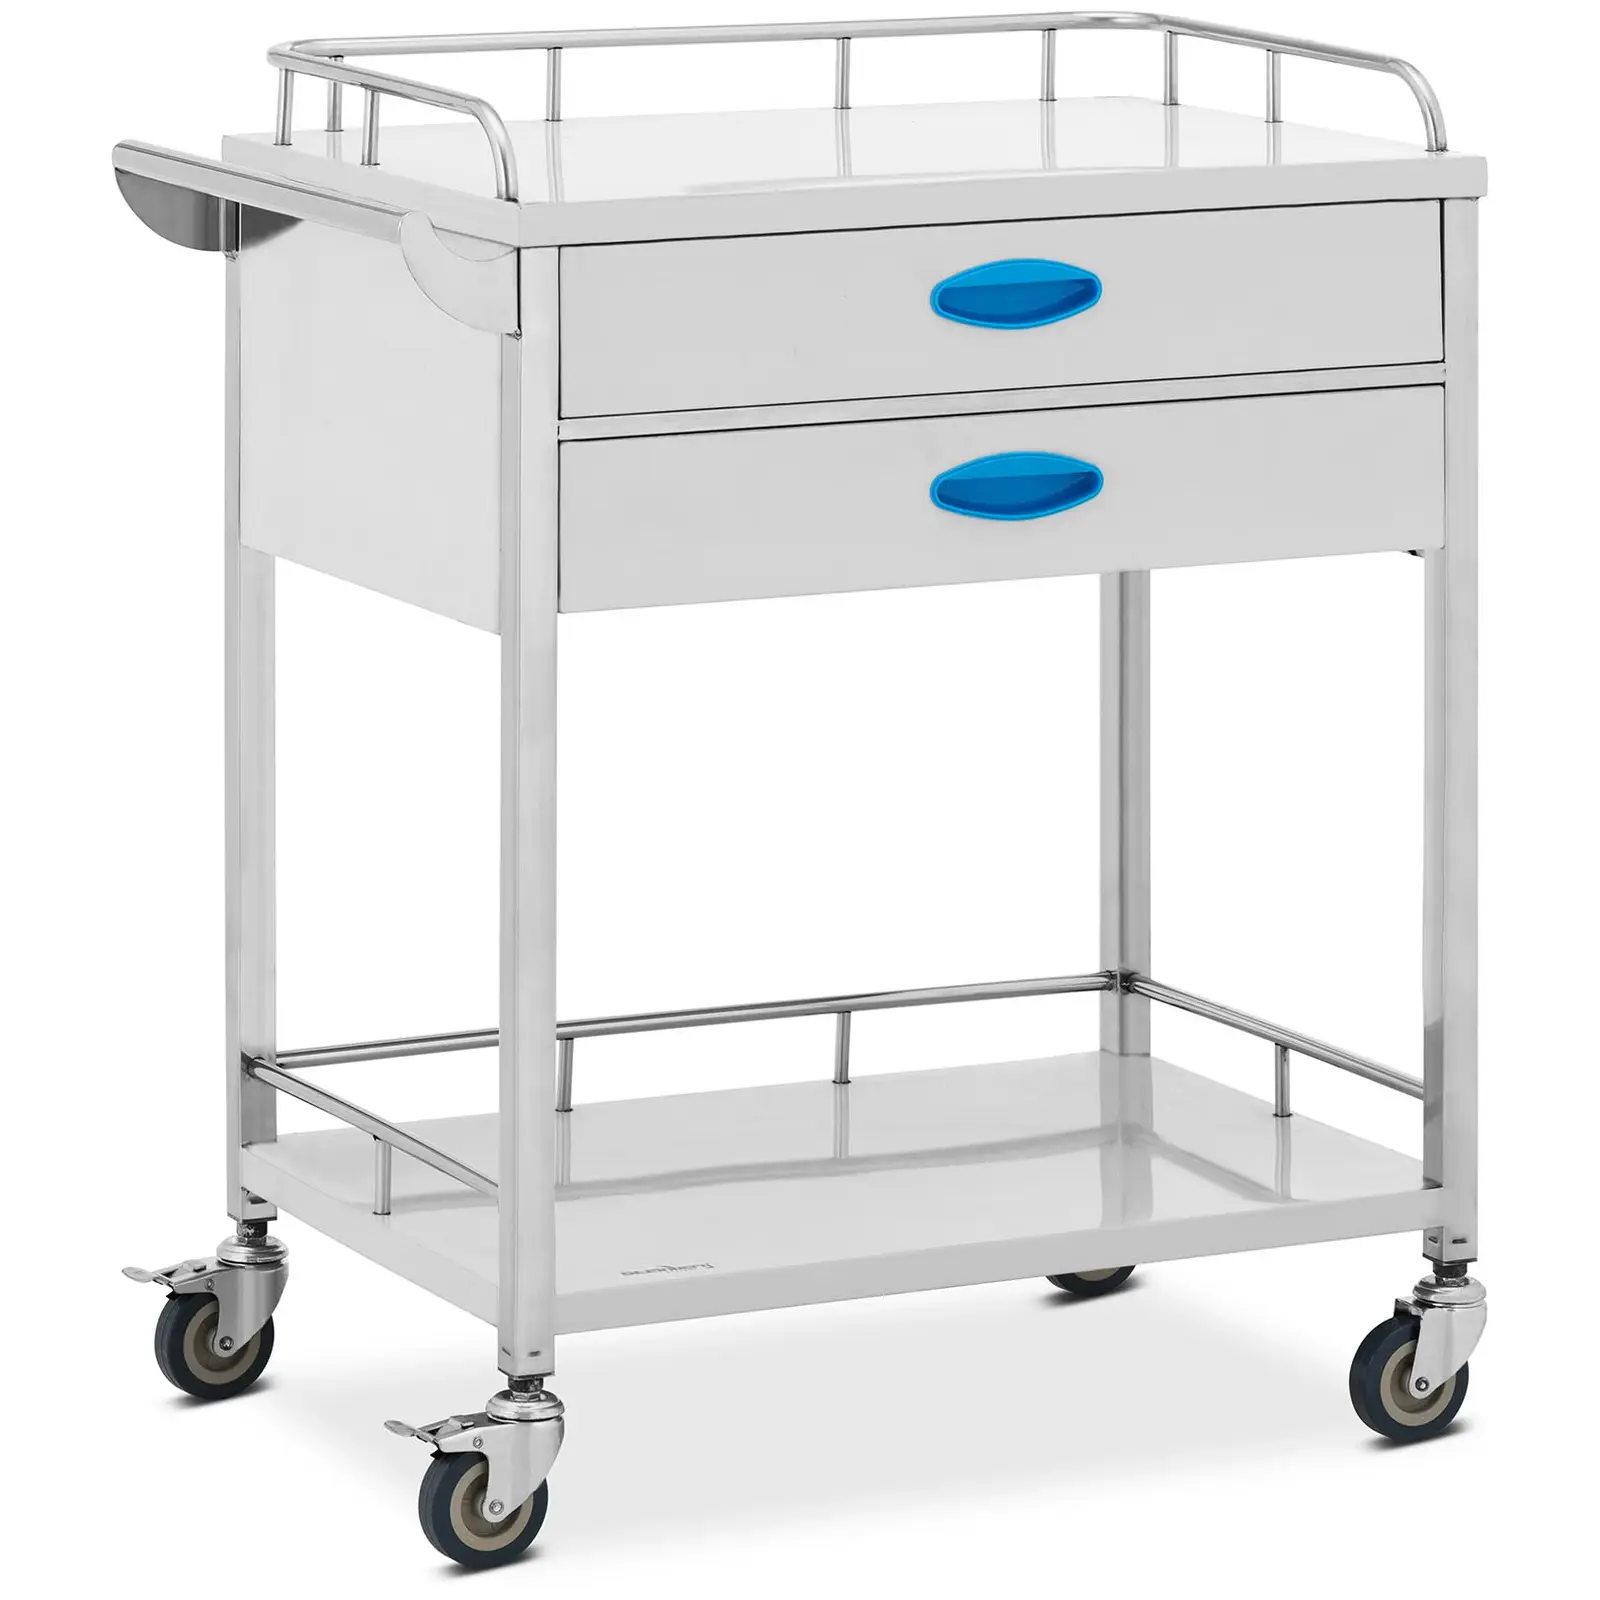 Laboratorinis vežimėlis - nerūdijantis plienas - 2 lentynos po 60 x 41 x 26 cm - 2 stalčiai - 40 kg